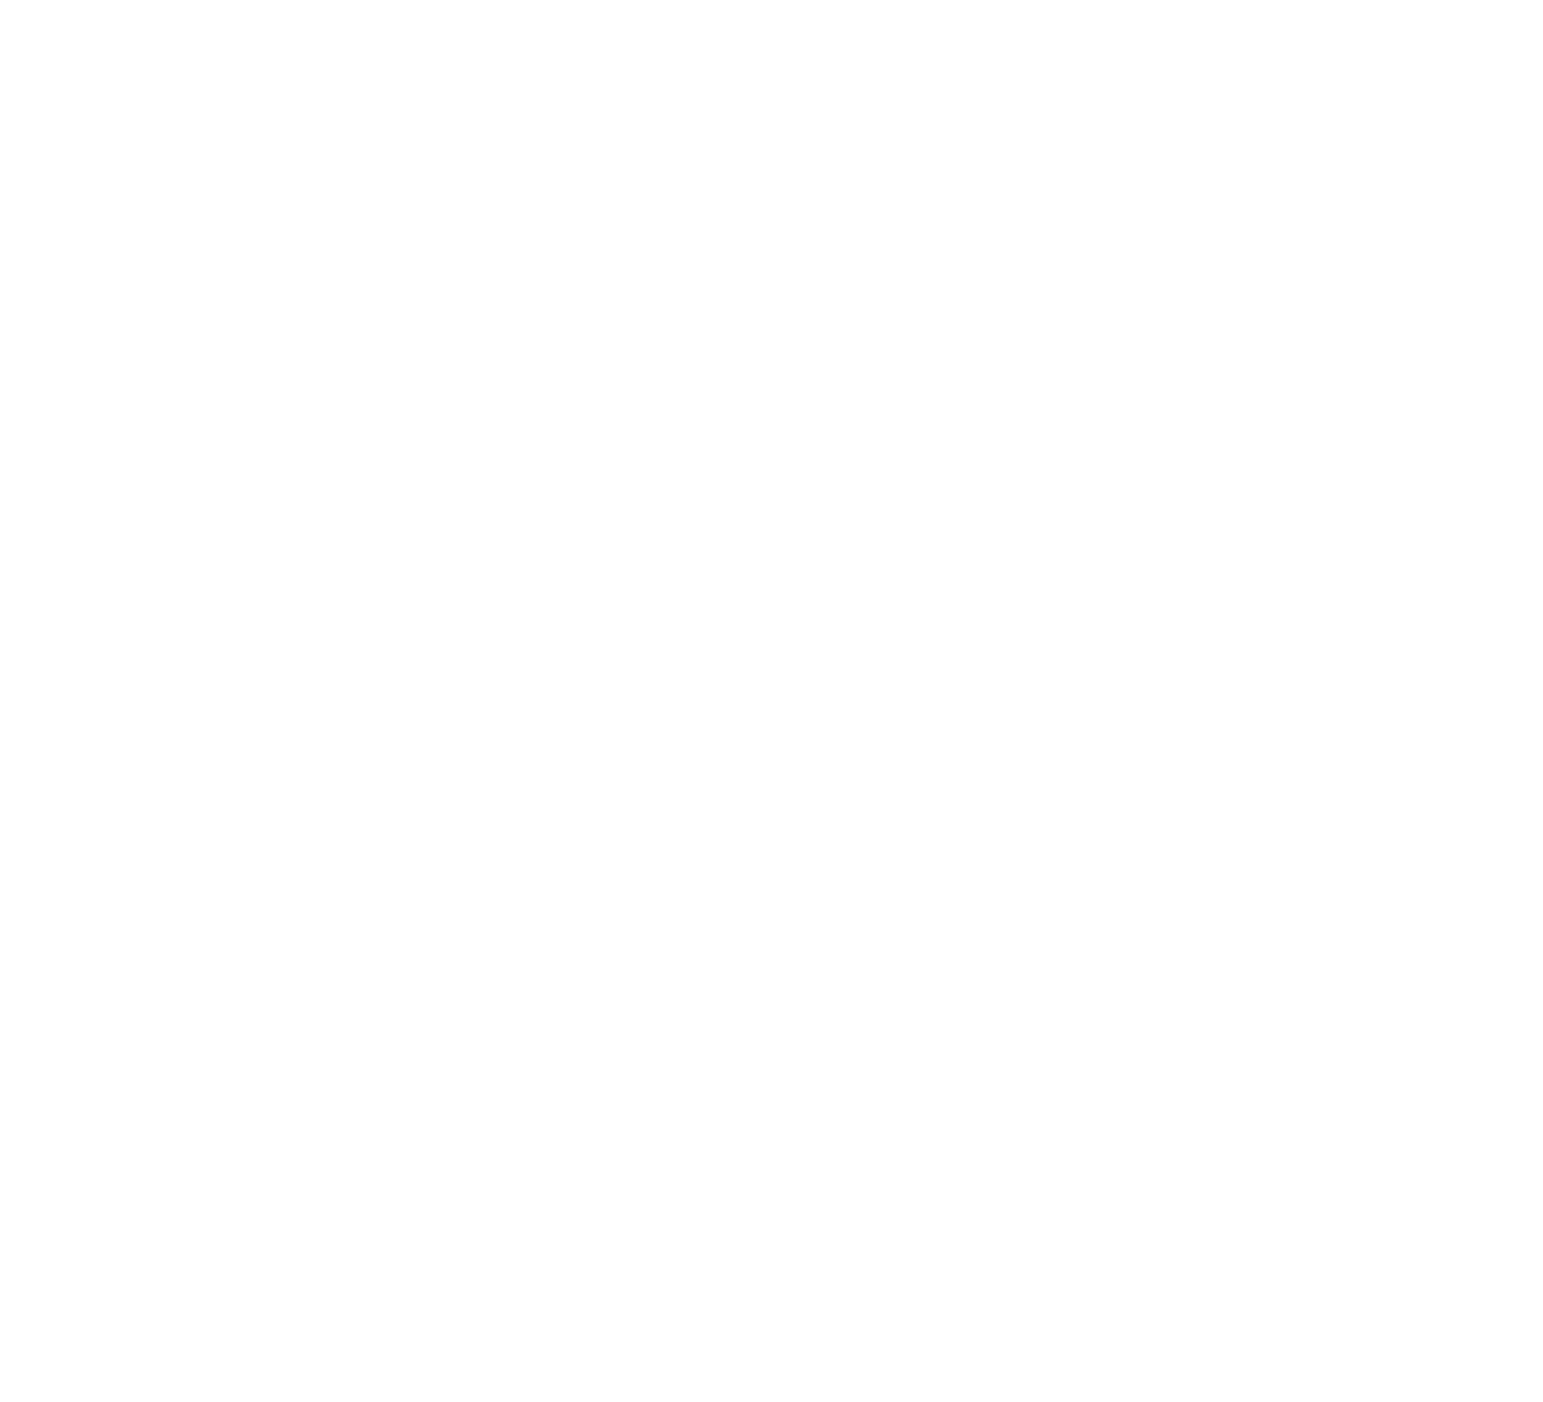 Amplify ETF Trust logo for dark backgrounds (transparent PNG)